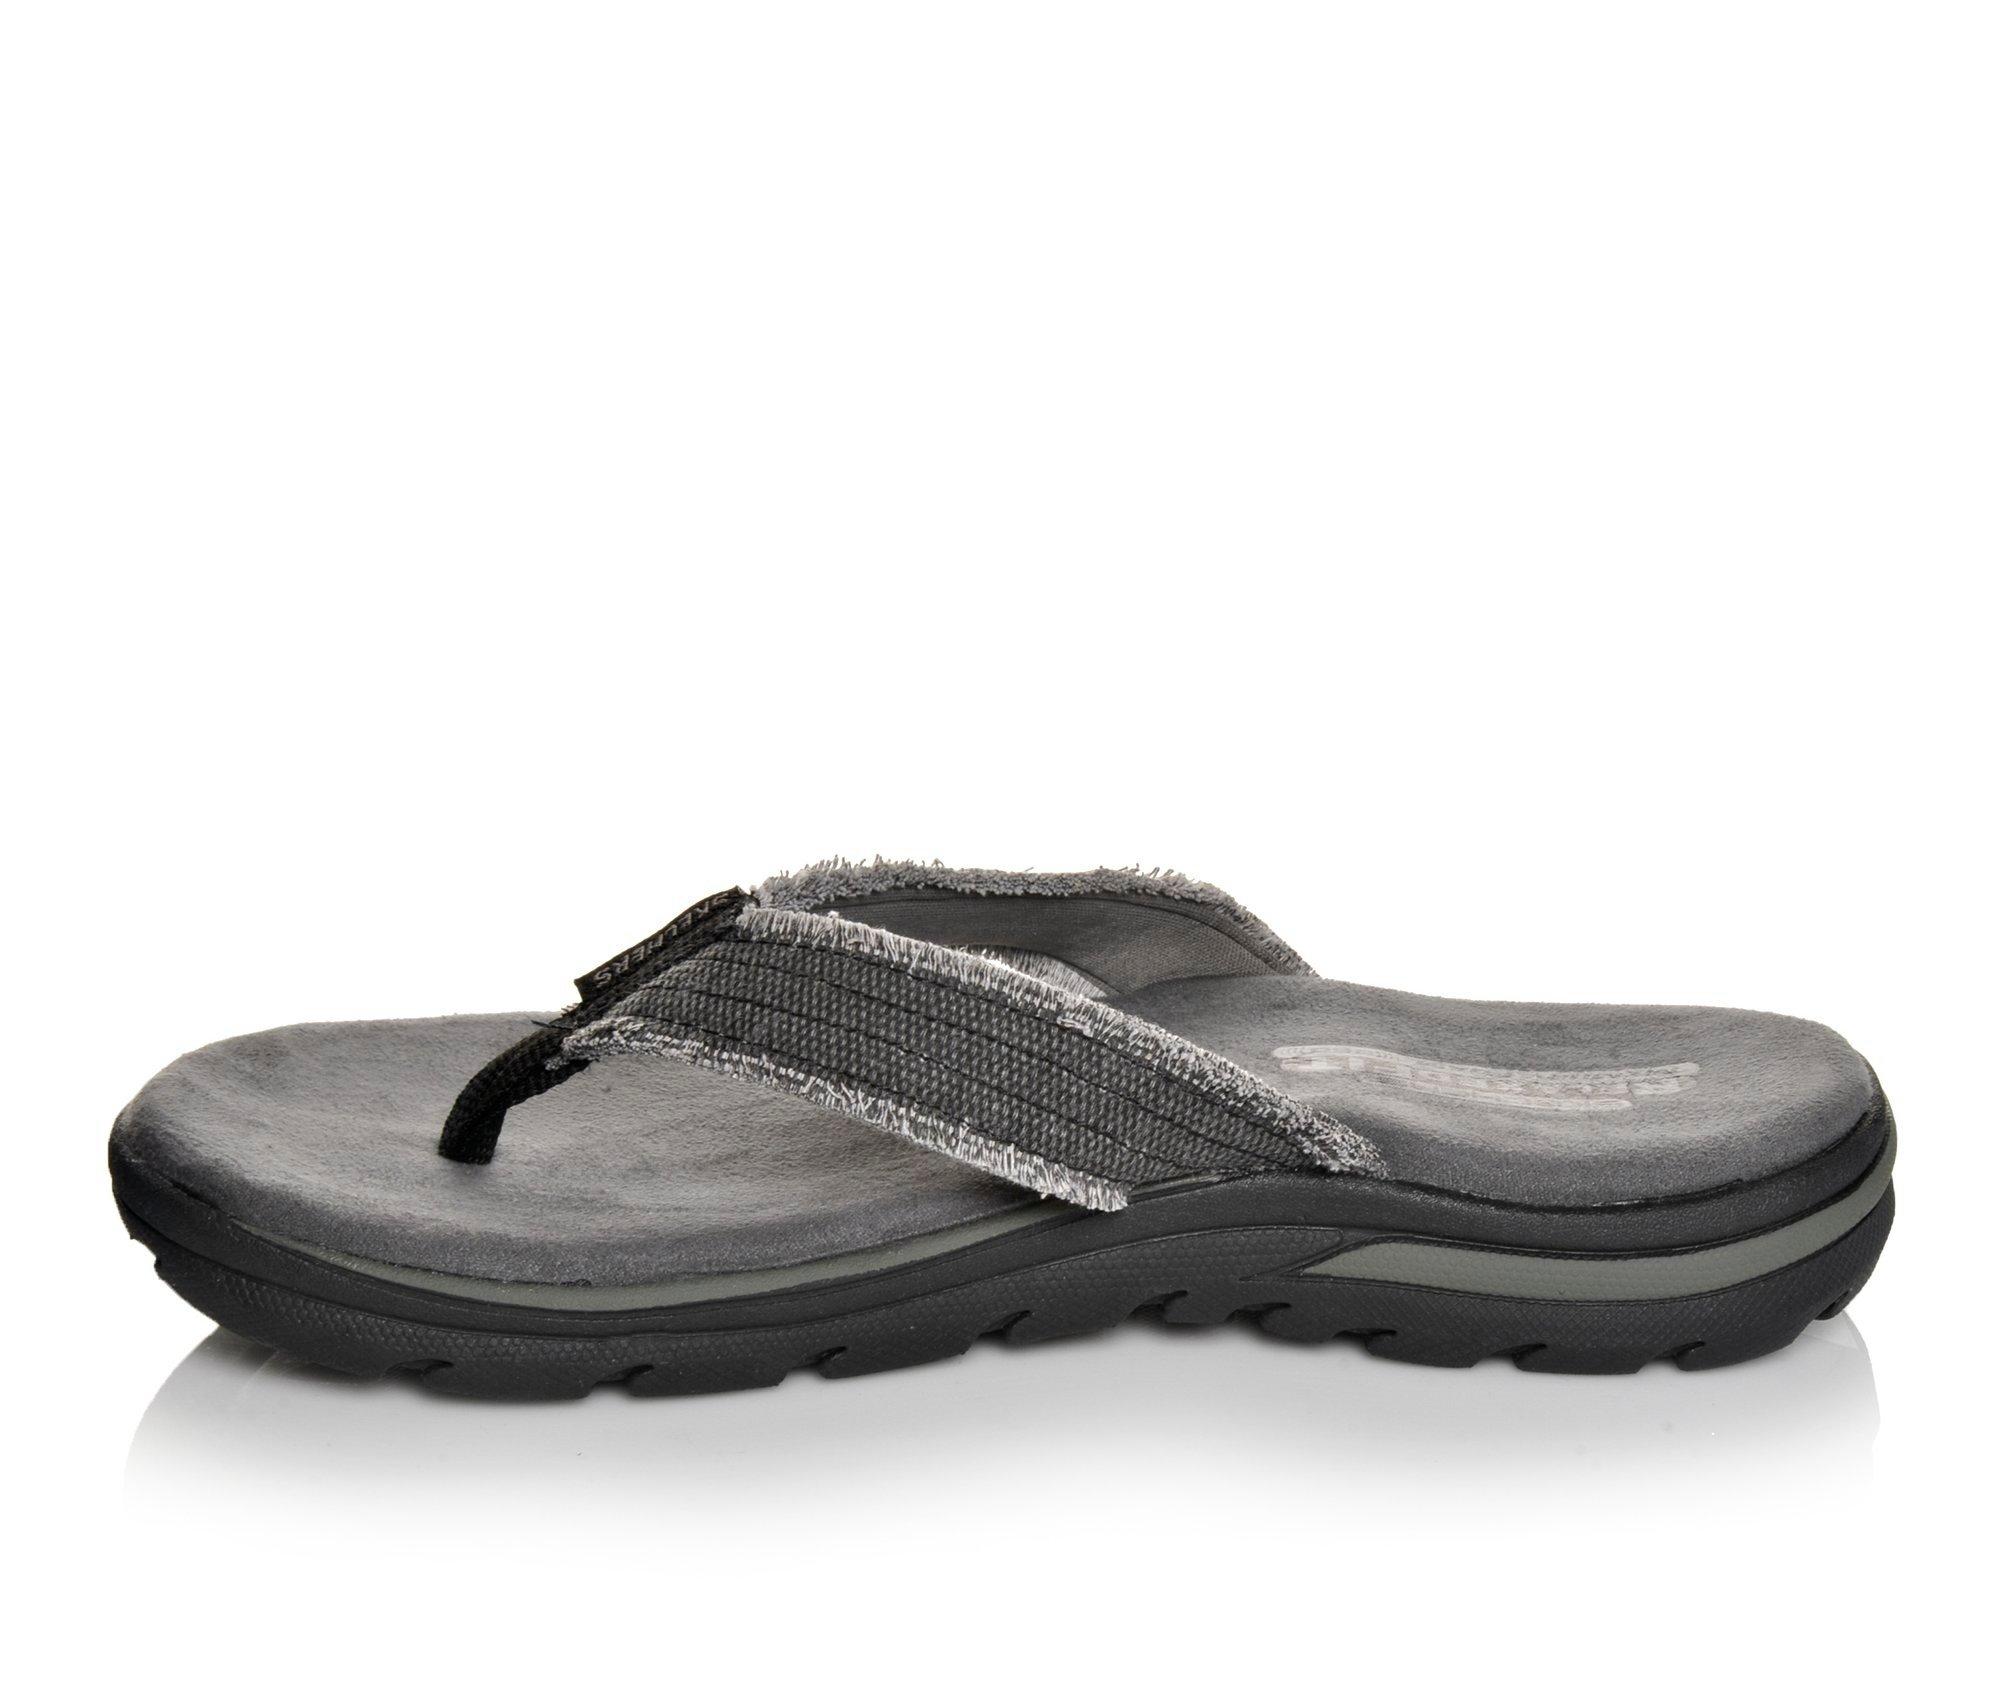 Men's Skechers 64152 Flip-Flops Shoe